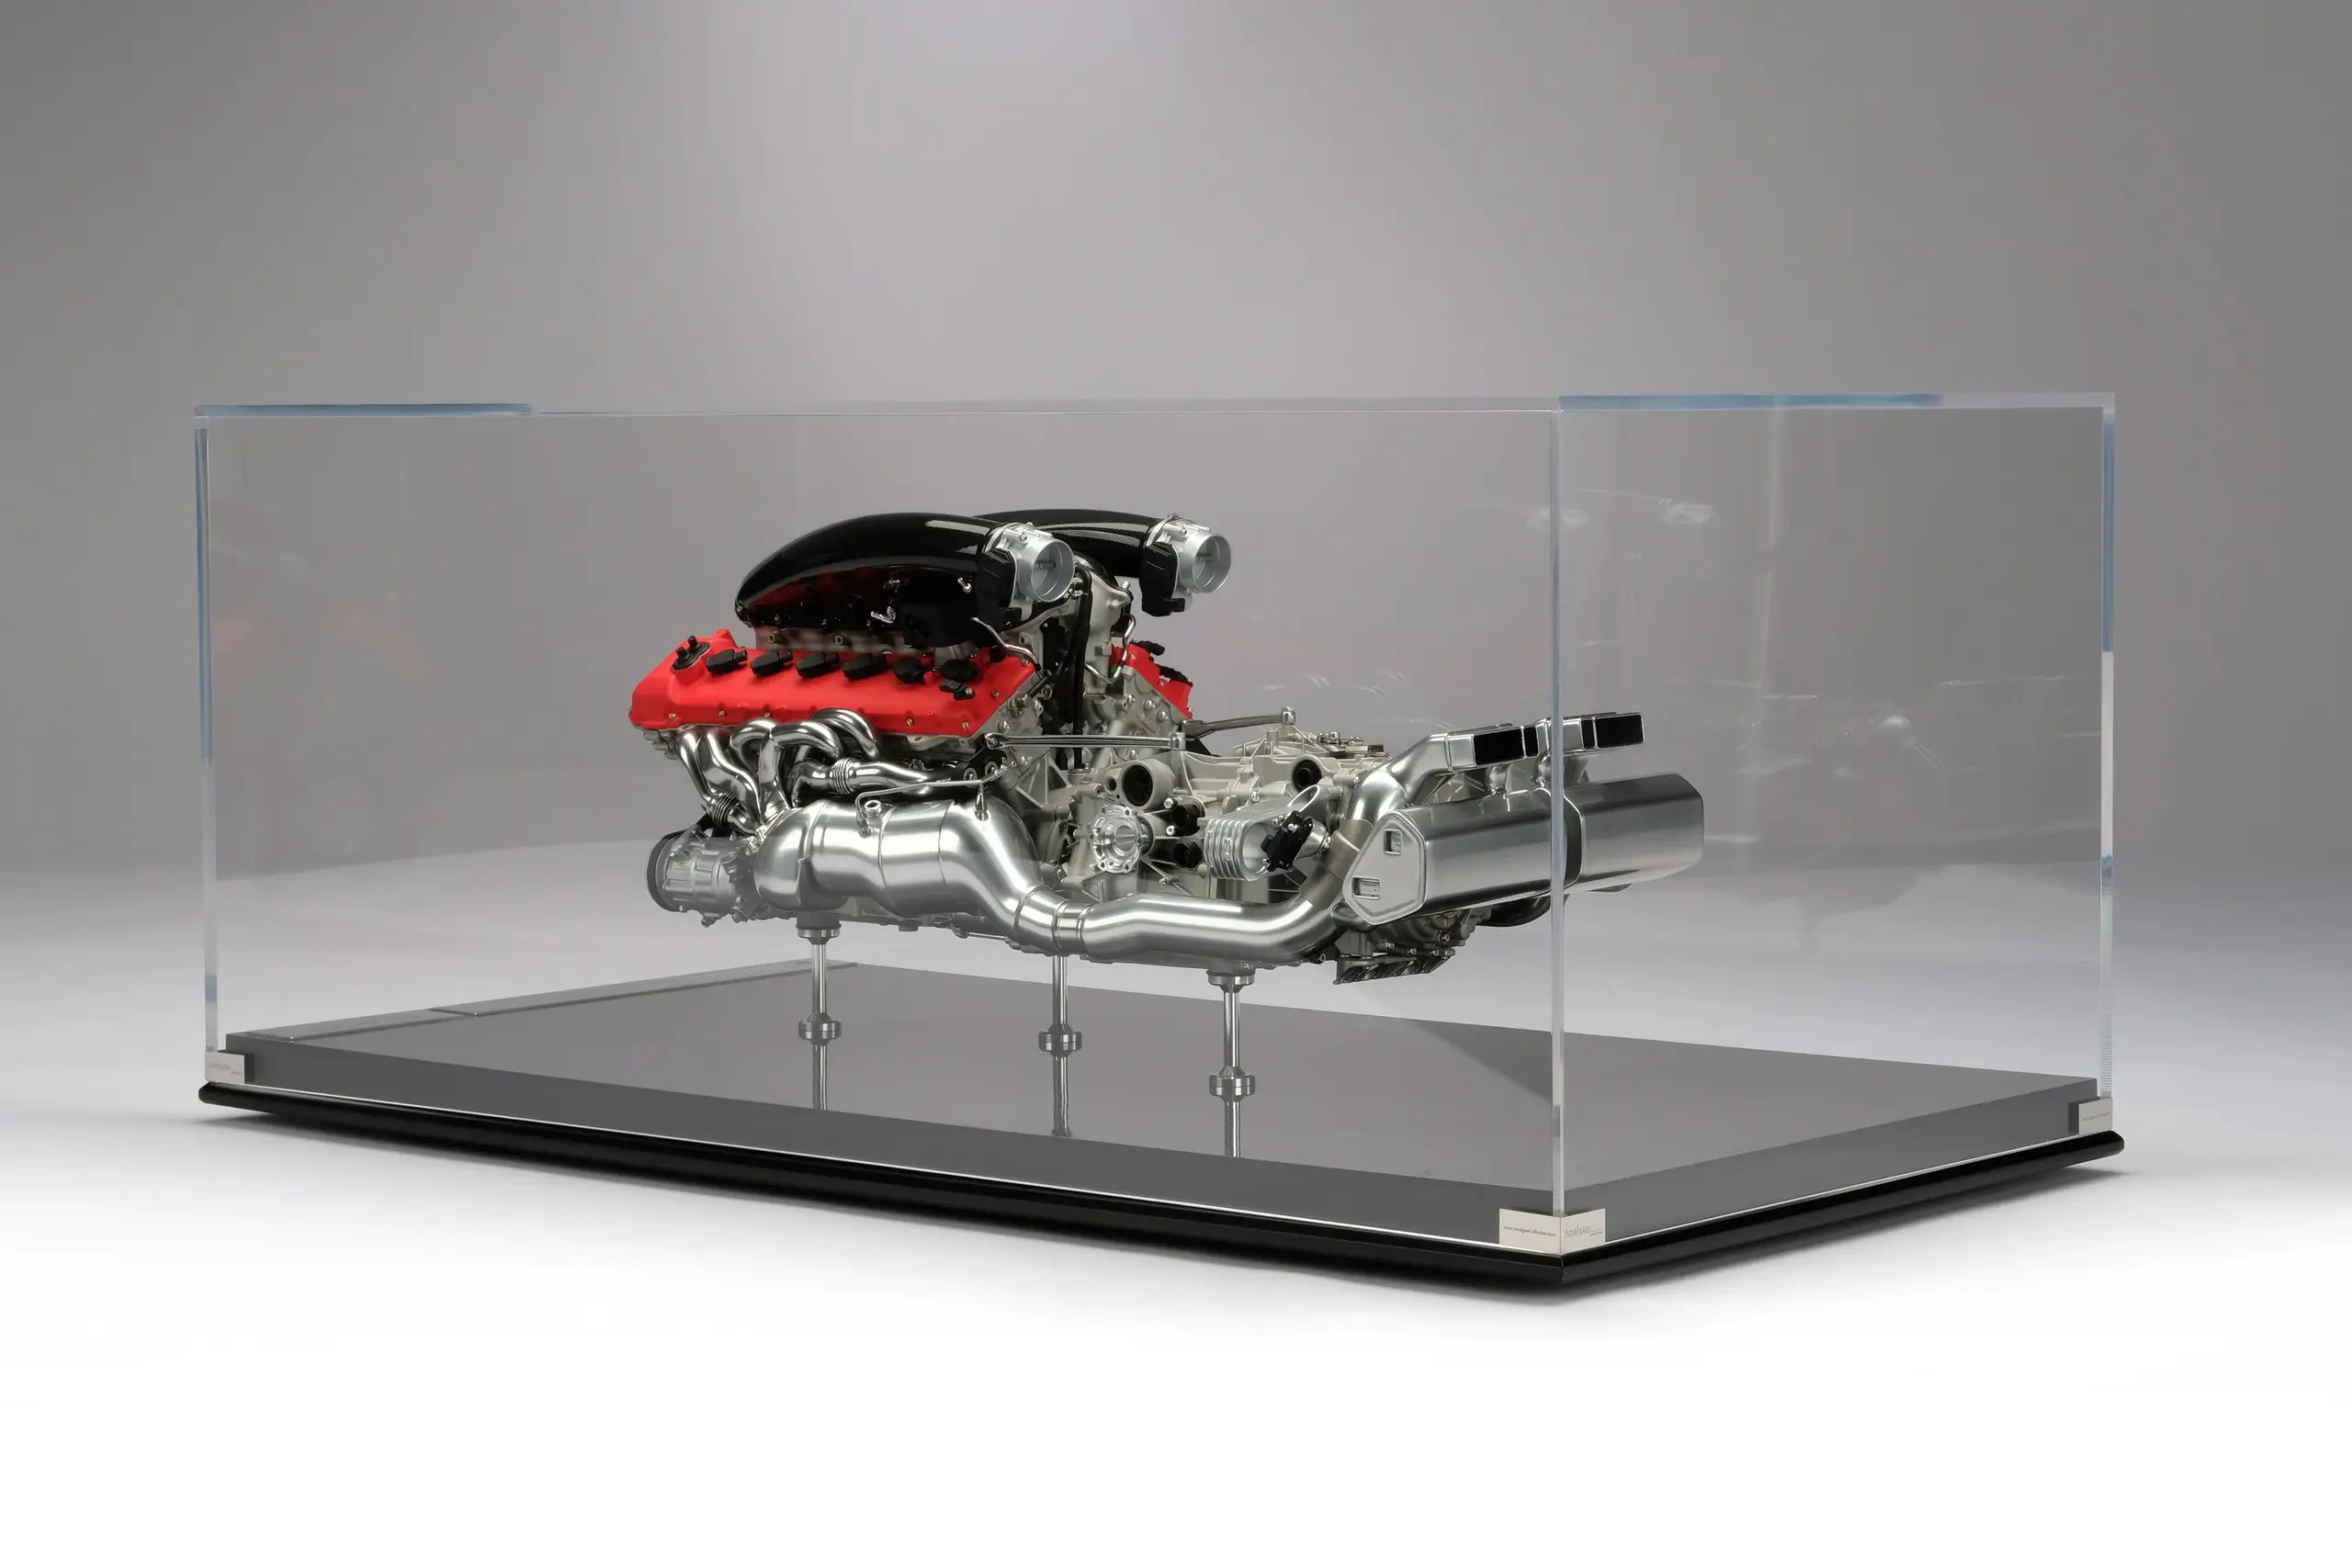 Компания Amalgam представила крошечную модель двигателя суперкара Ferrari Daytona SP3